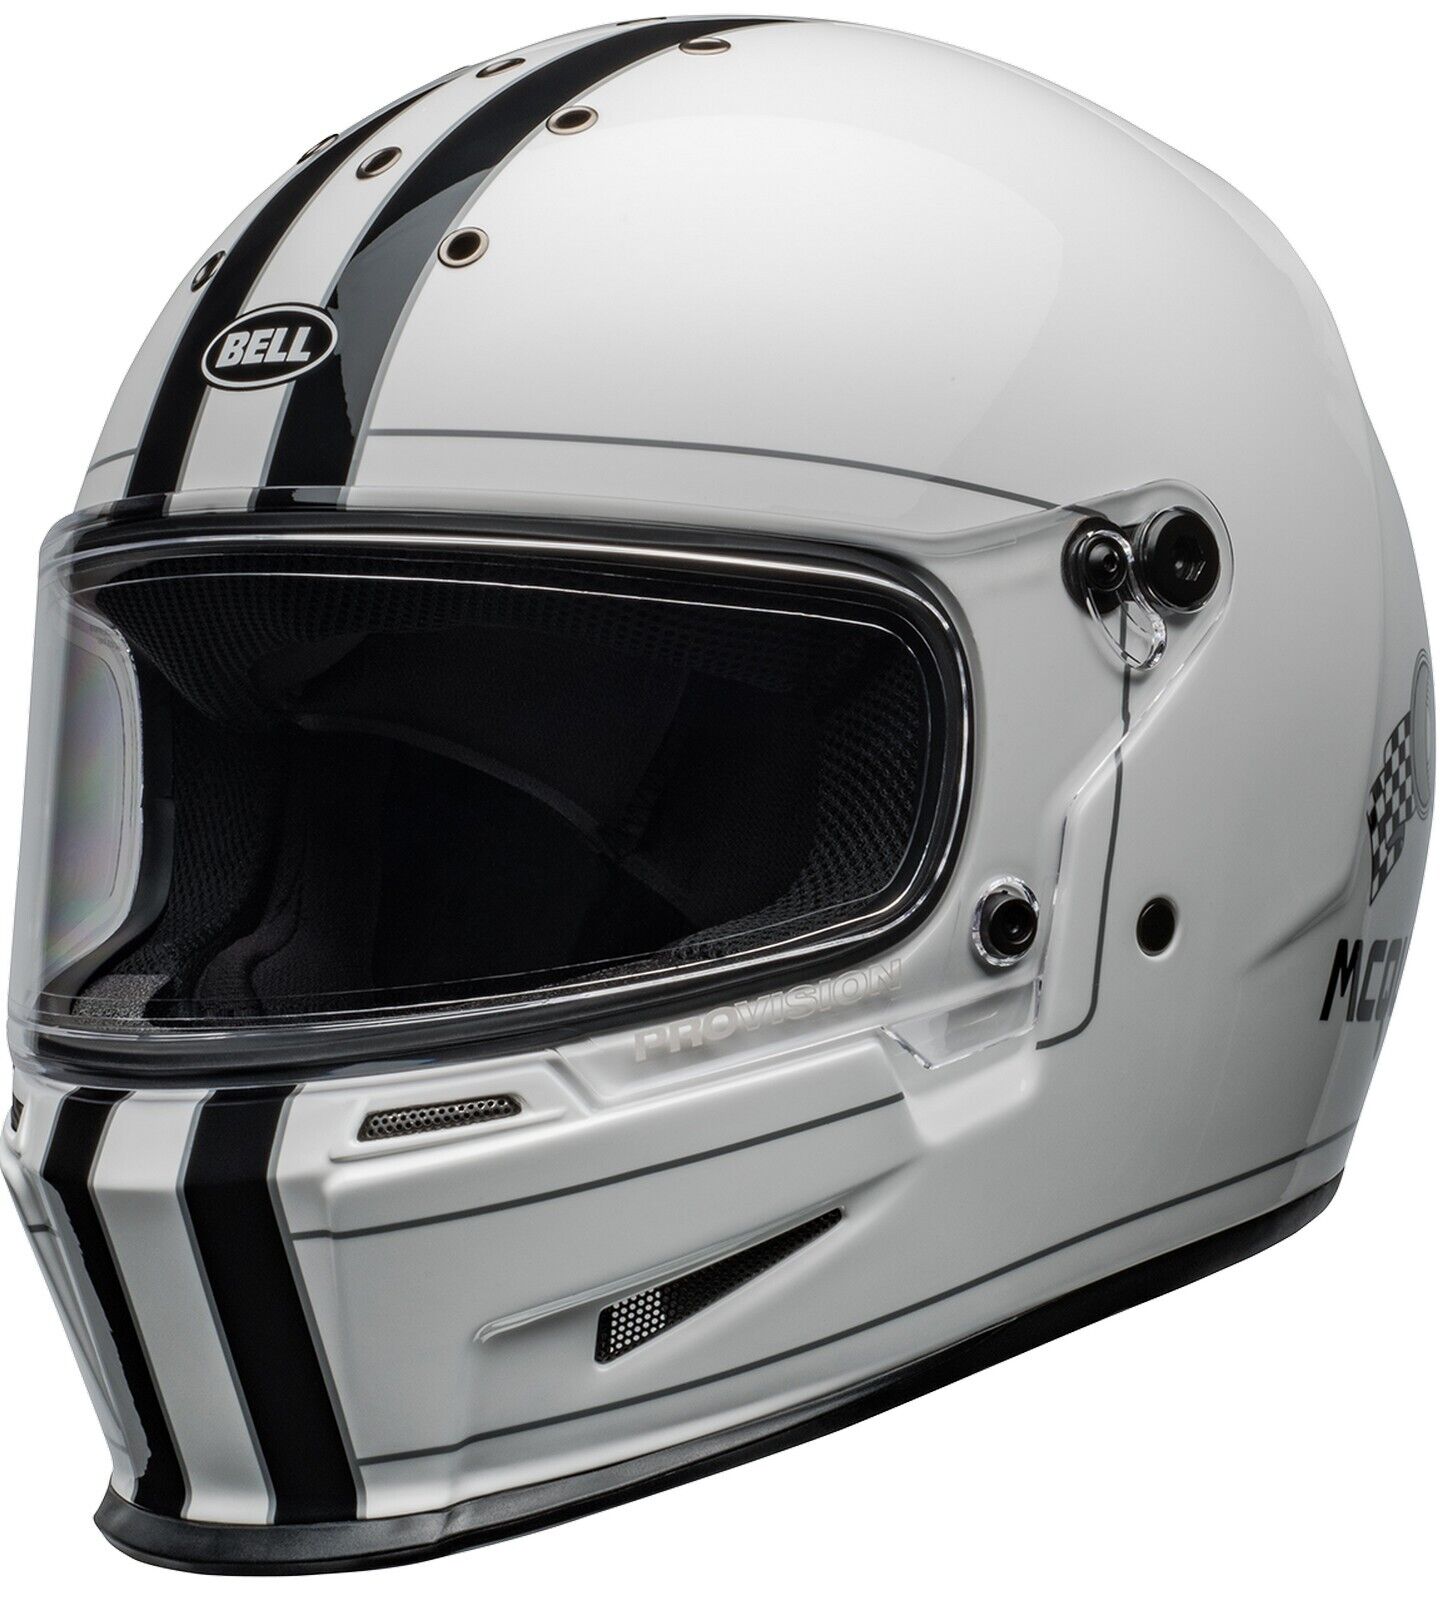 Bell Eliminator Steve McQueen Motorcycle Helmet White